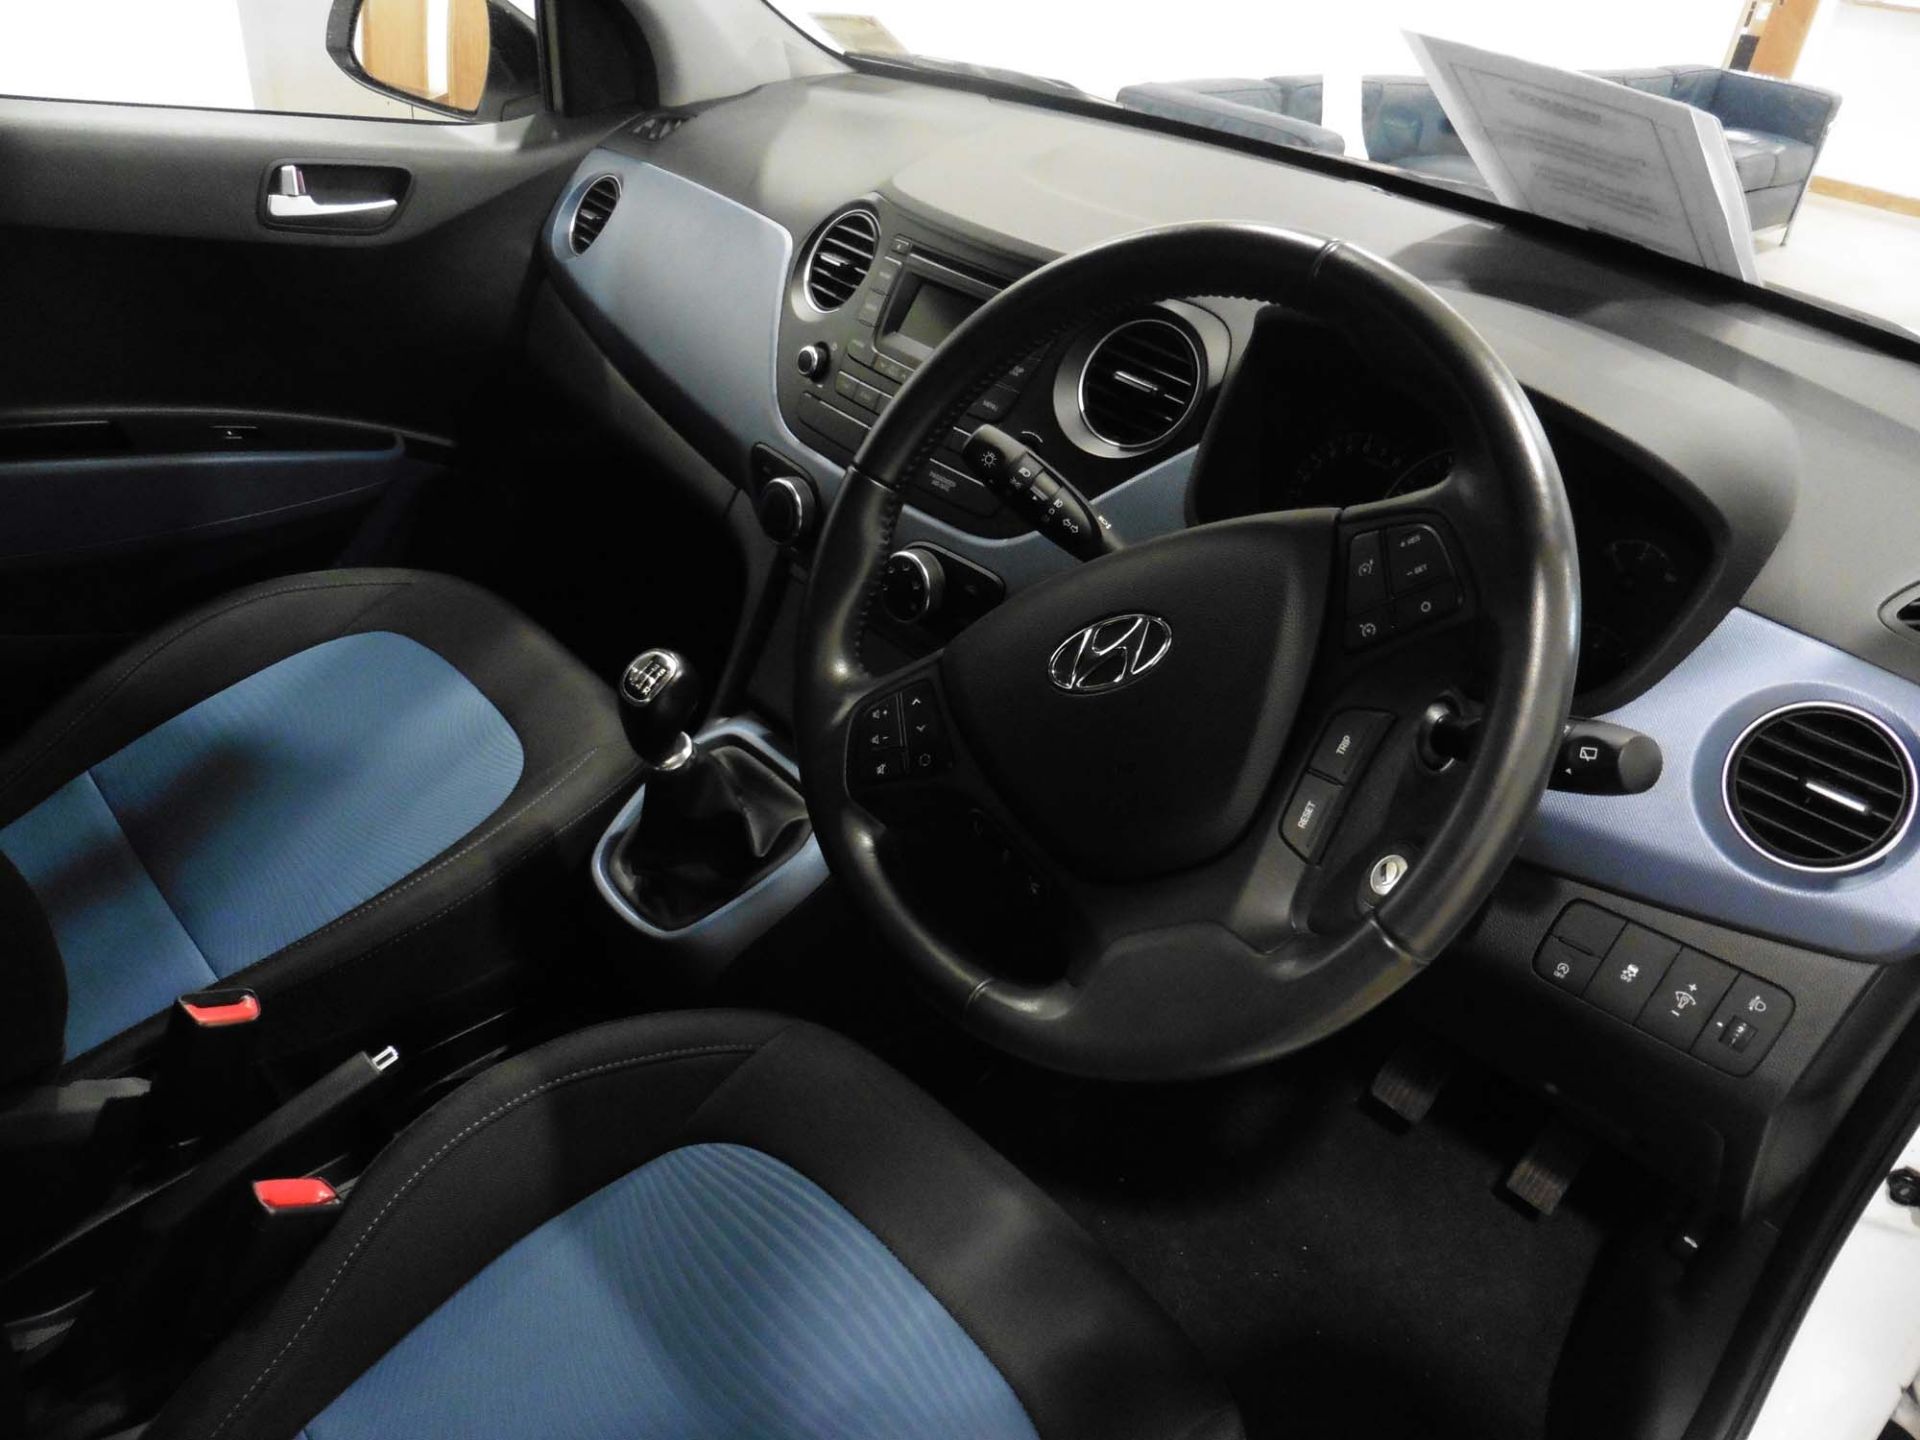 Hyundai i10 Premium Blue Drive 998cc petrol hatchback Registration number: LS65 HKL First - Image 6 of 6